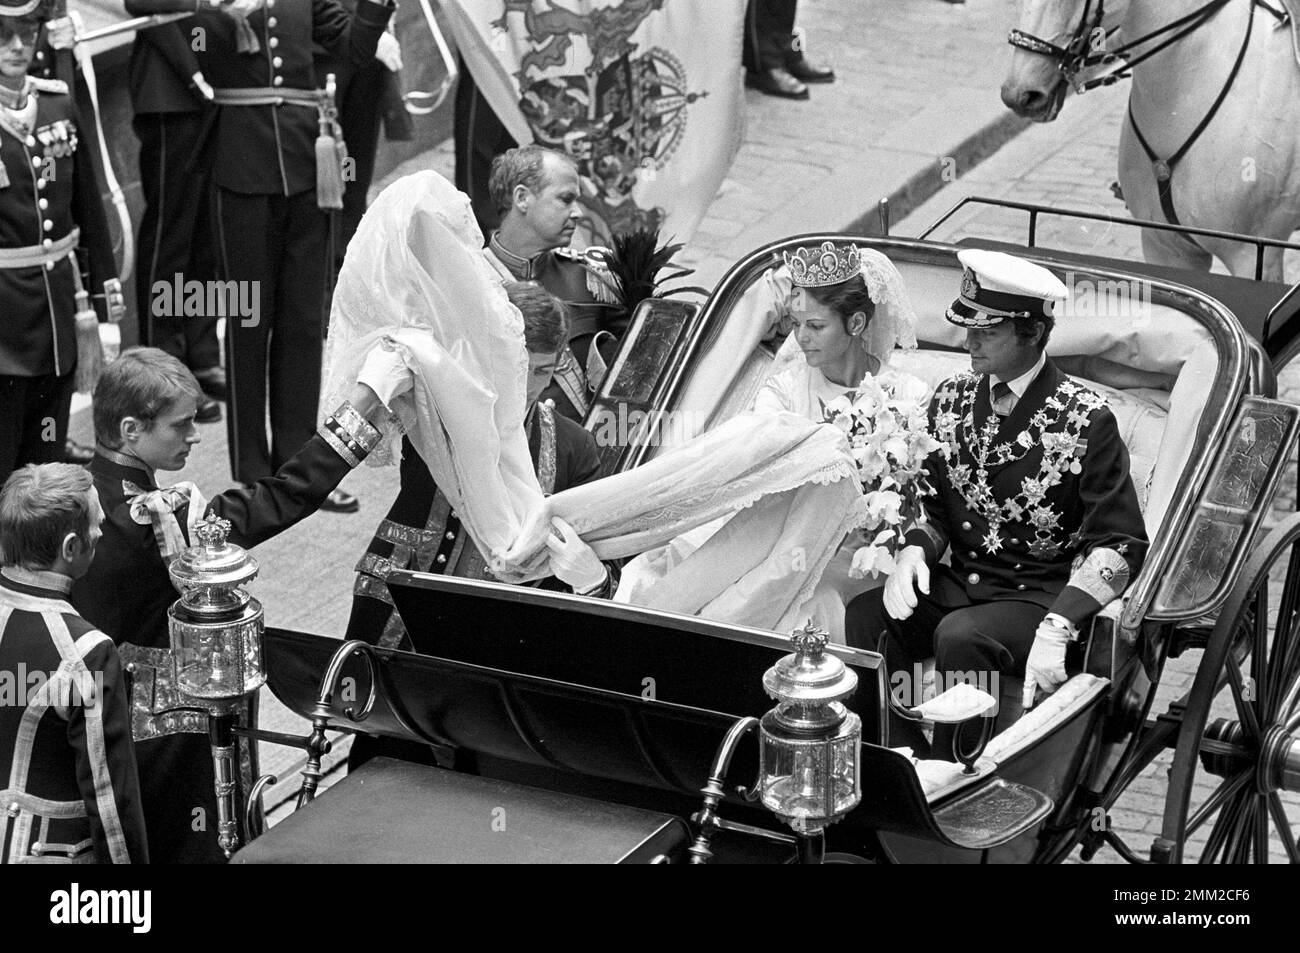 Matrimonio di Carlo XVI Gustaf e Silvia Sommerlath. Carl XVI Gustaf, re di Svezia. Nato il 30 aprile 1946. Il matrimonio 19 giugno 1976. La regina Silvia e il re Carl XVI Gustaf dopo la cerimonia nuziale a Storkyrkan a Stoccolma. rif BV7-5,6 Foto Stock